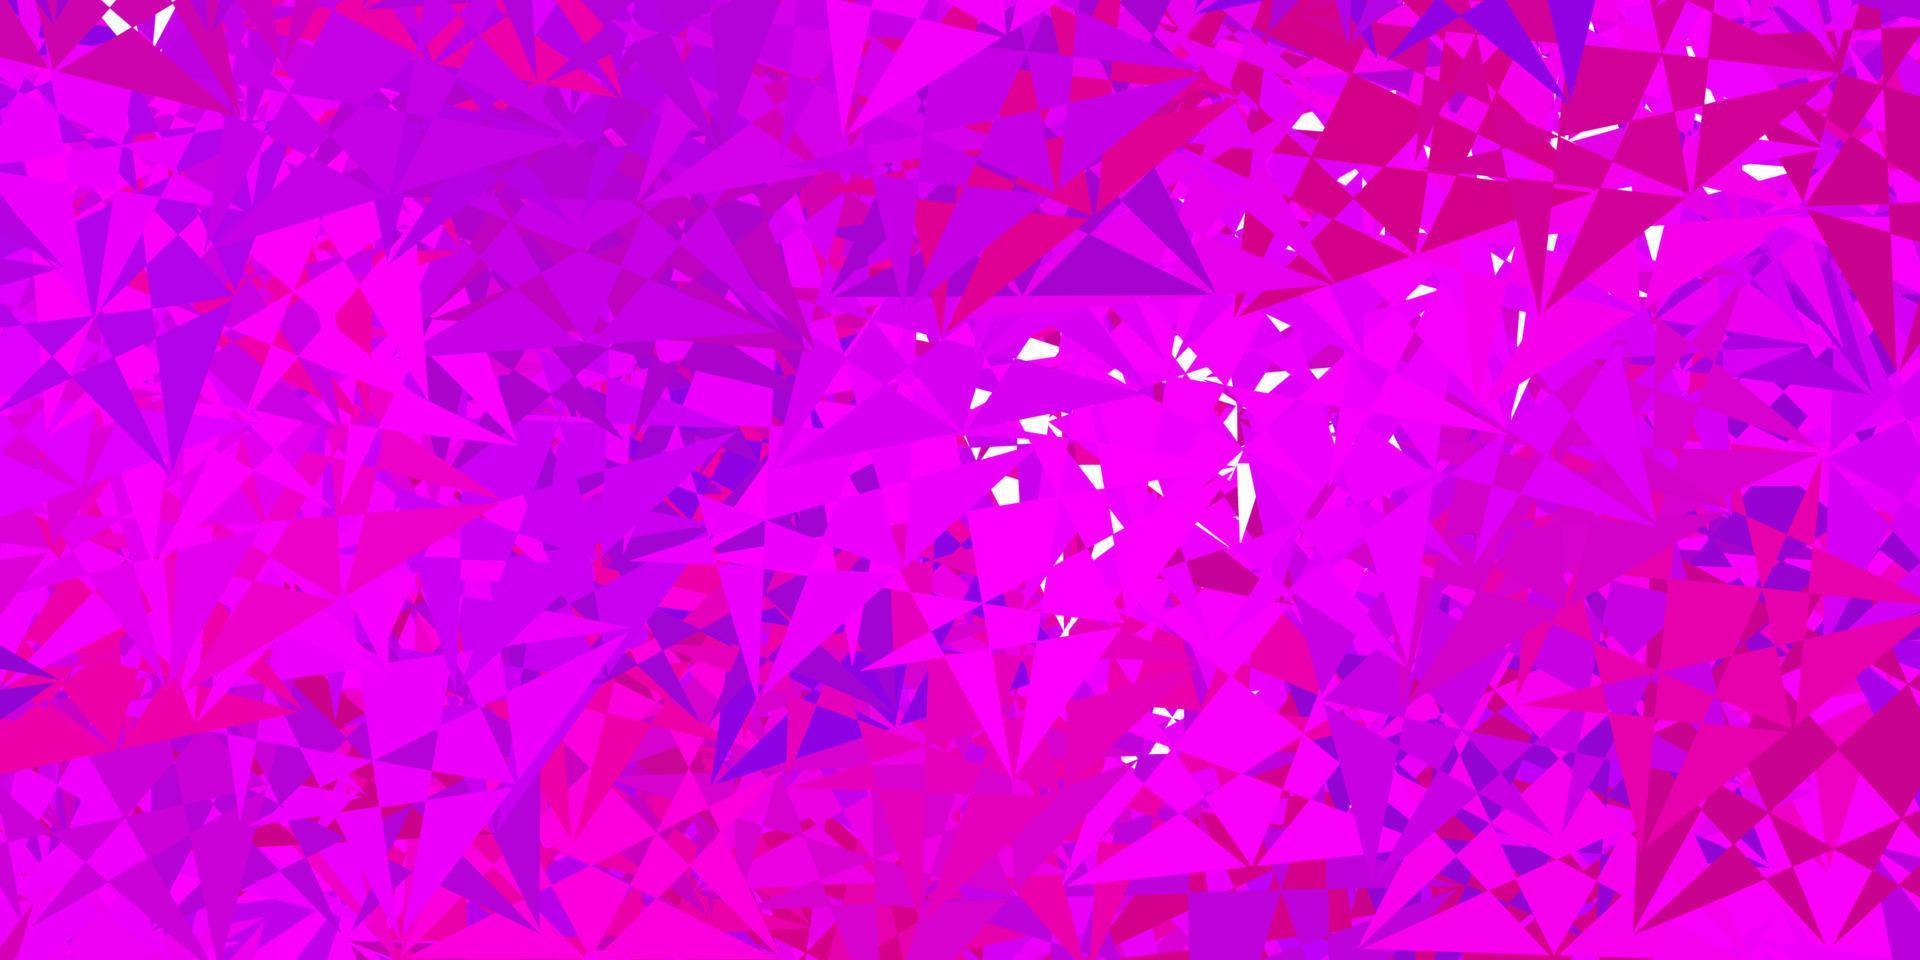 ljuslila, rosa vektorlayout med triangelformer. vektor